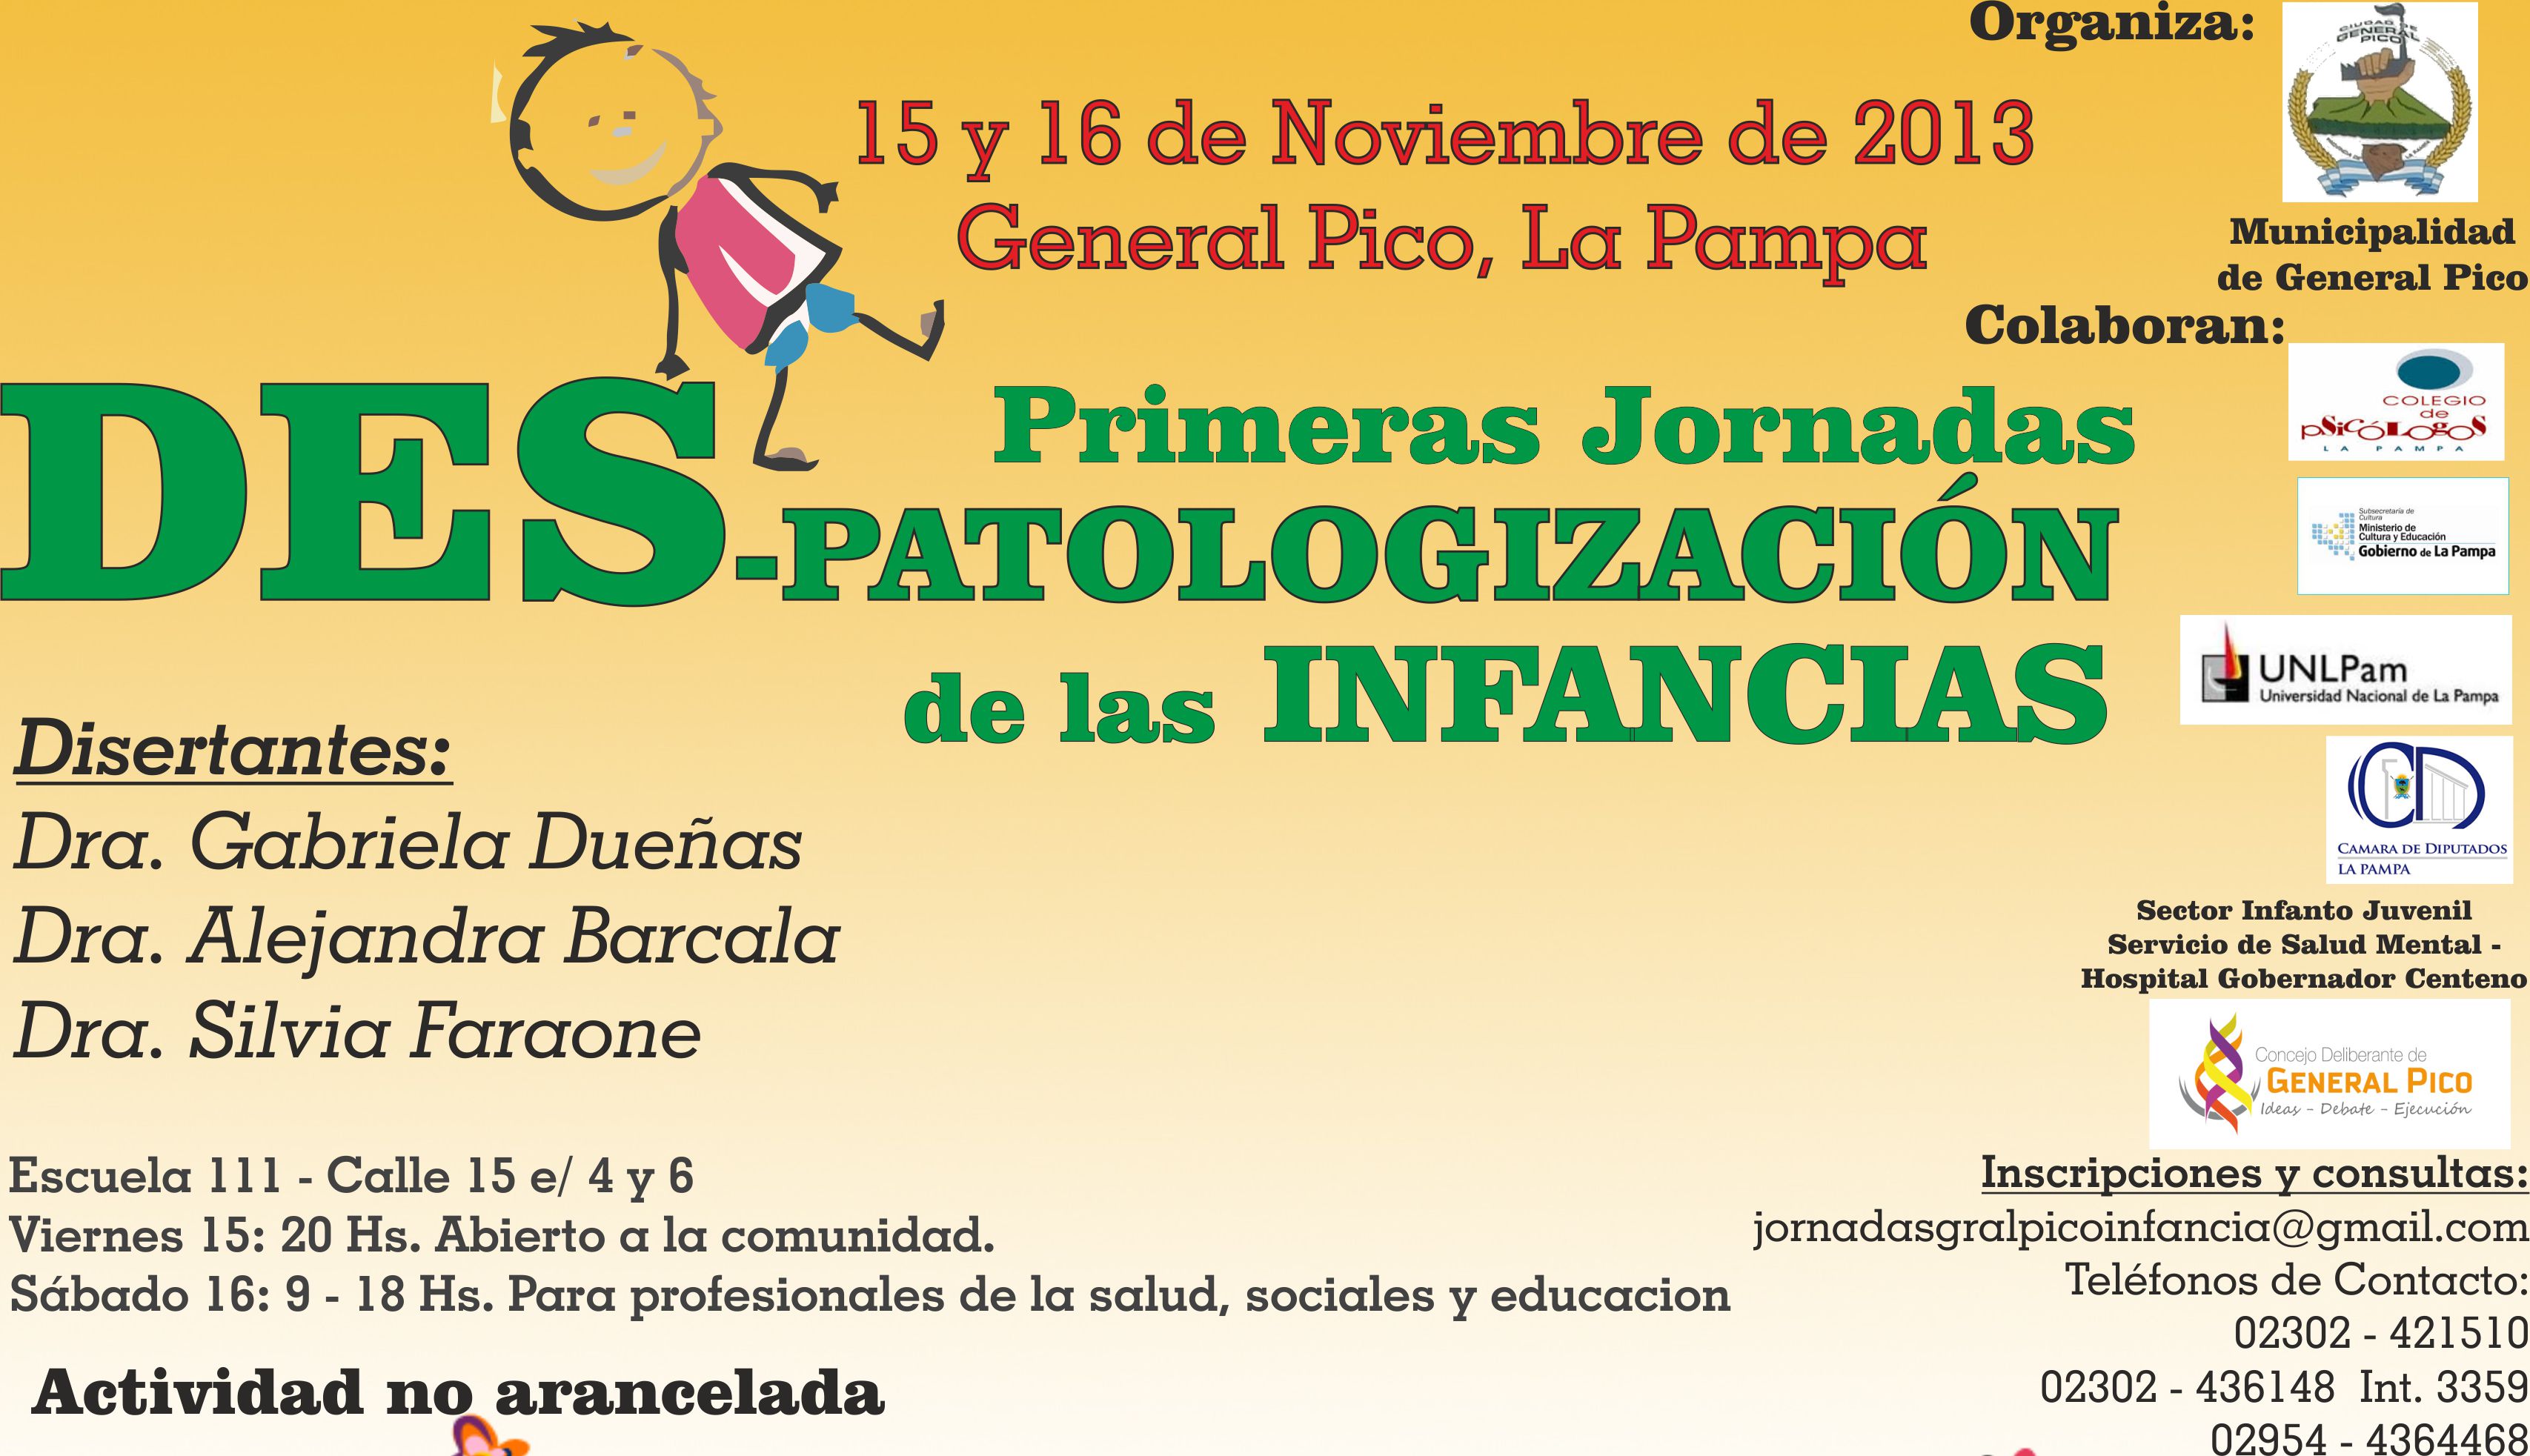 Agenda Pampeana, Eventos y Actividades de La Pampa